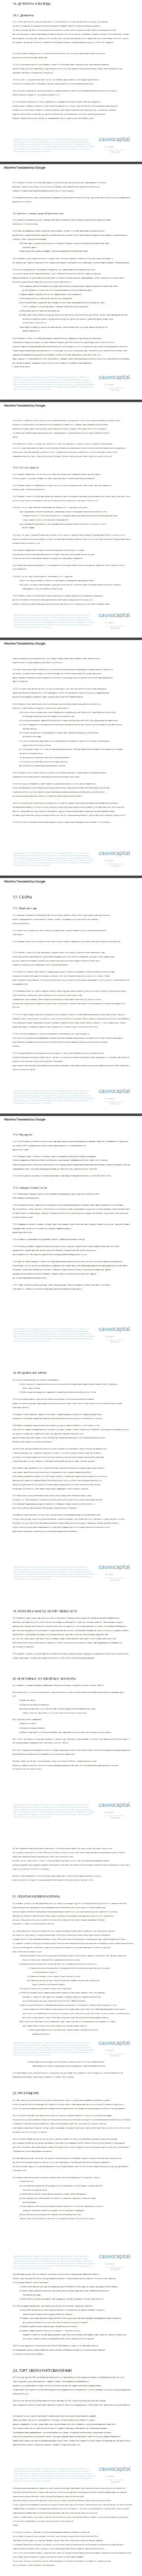 Часть 3 клиентского соглашения форекс-компании CauvoCapital